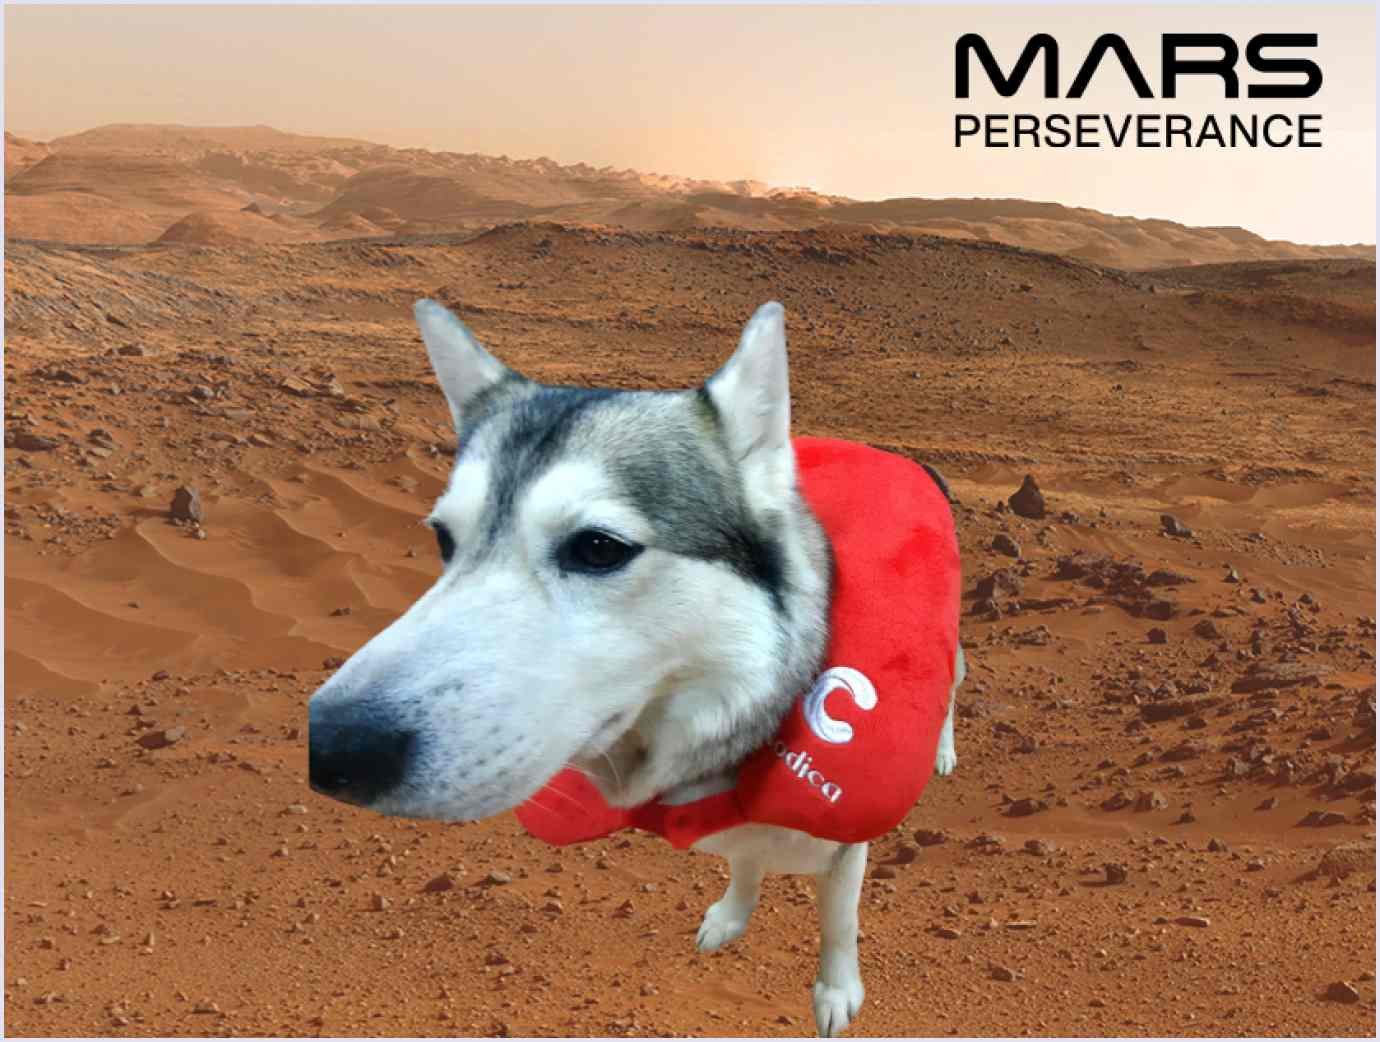 Codica team left a mark on Mars